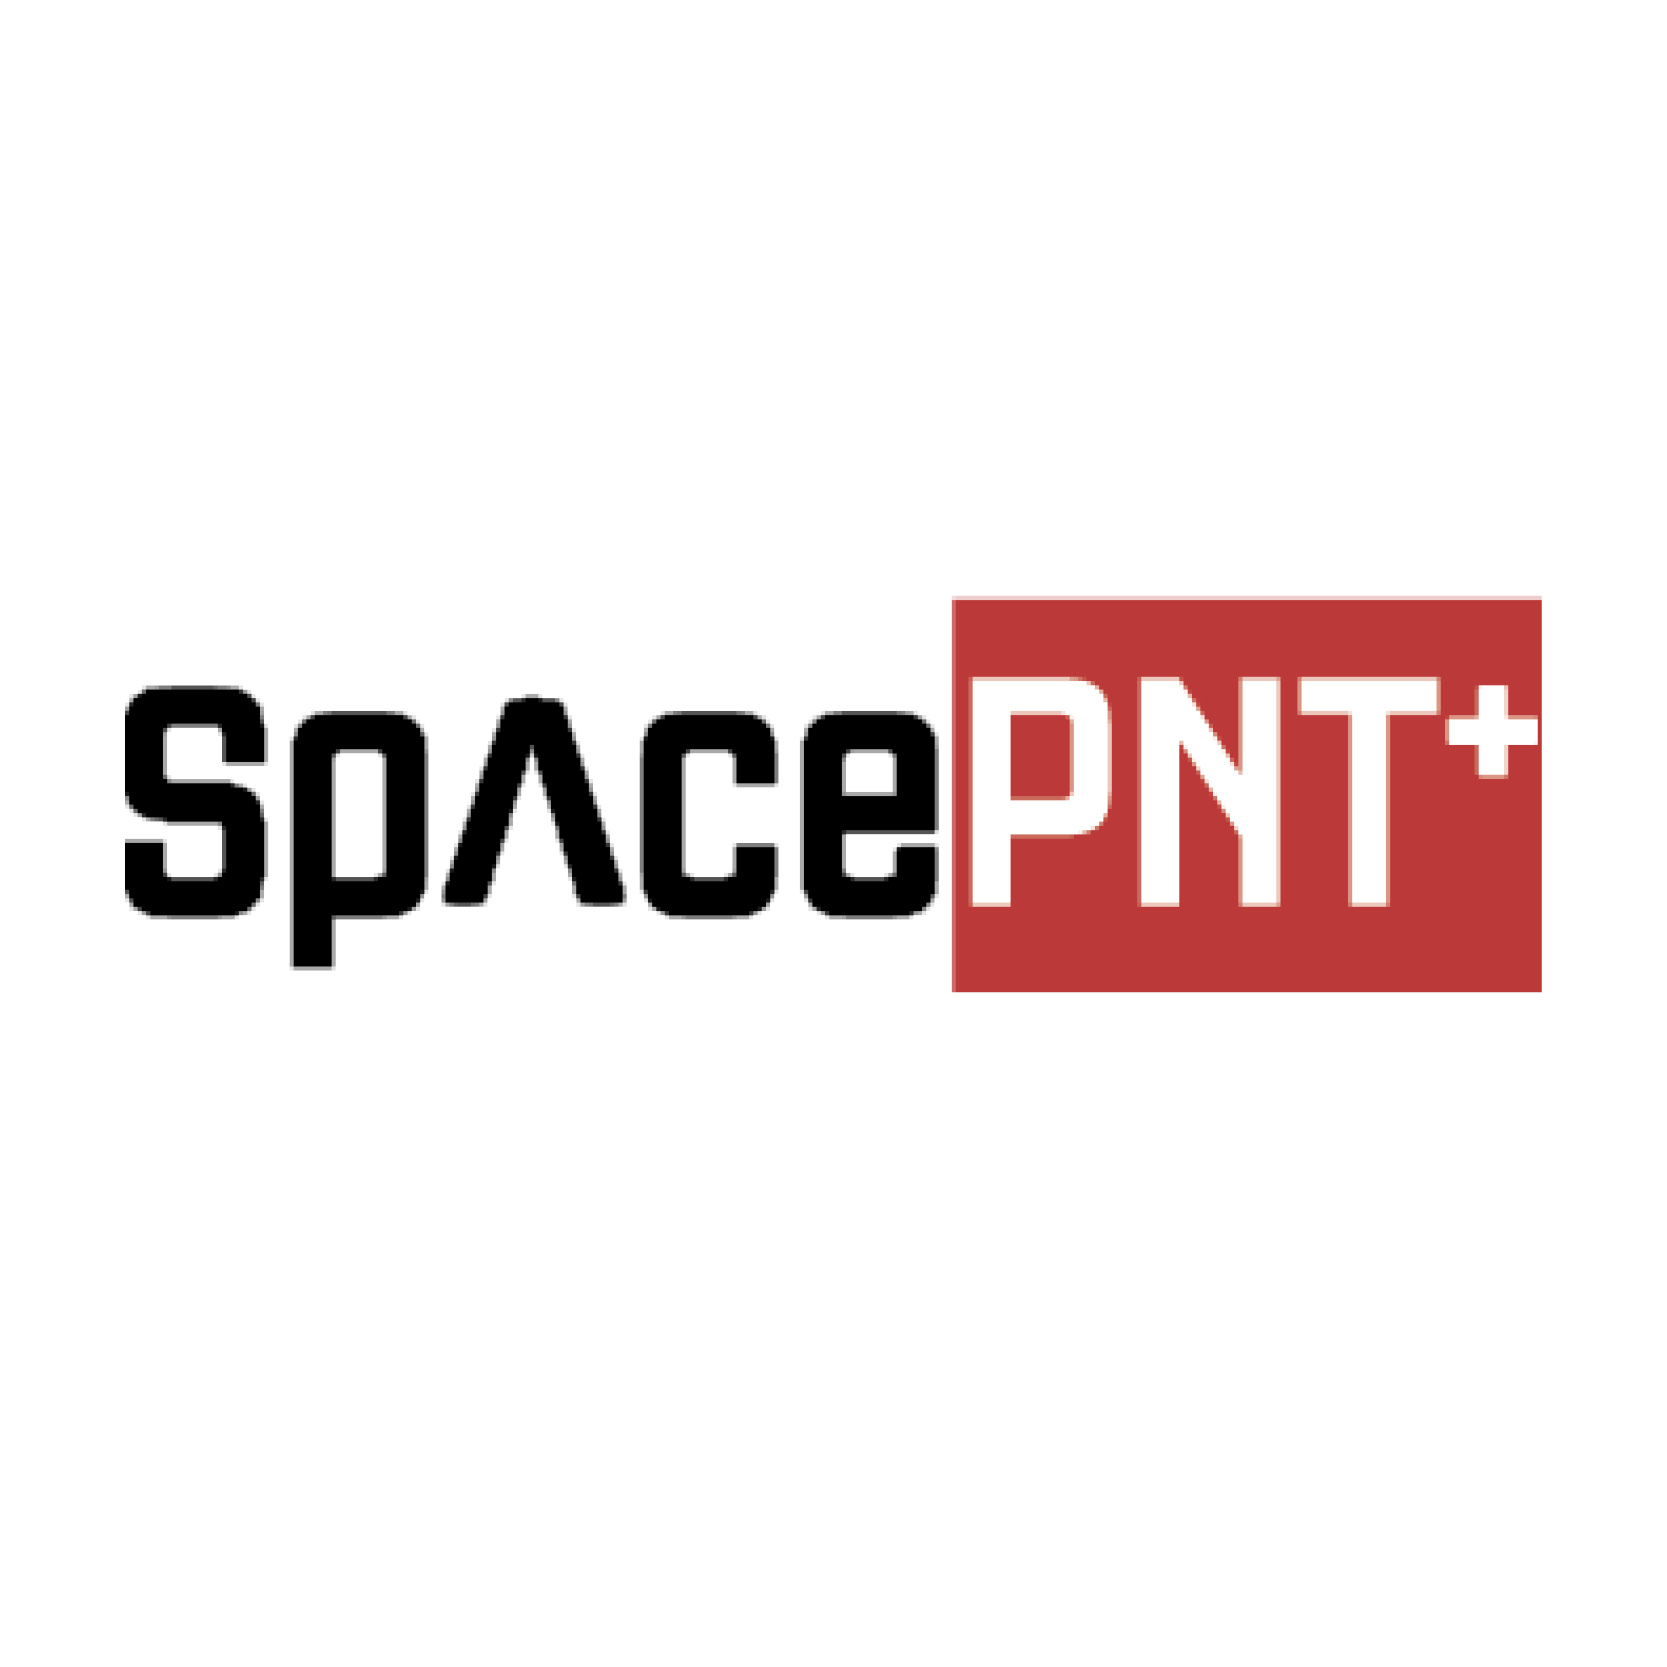 SpacePNT+